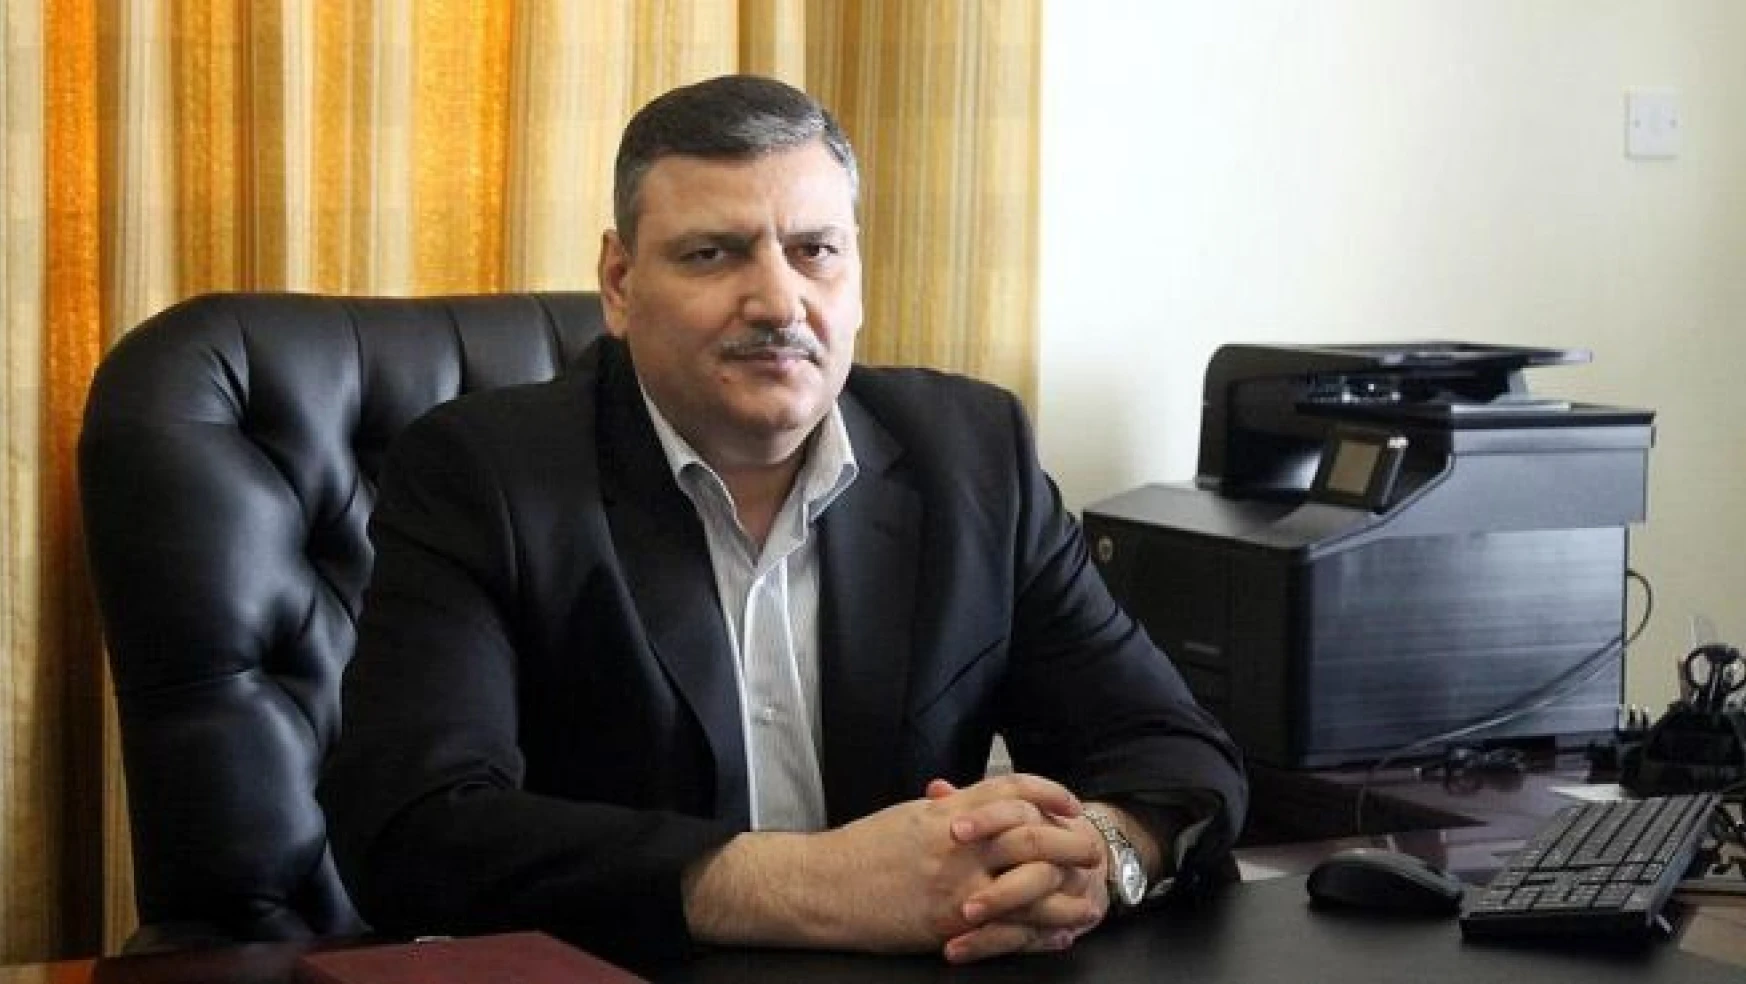 Hicab rejimle müzakere için genel koordinatör seçildi